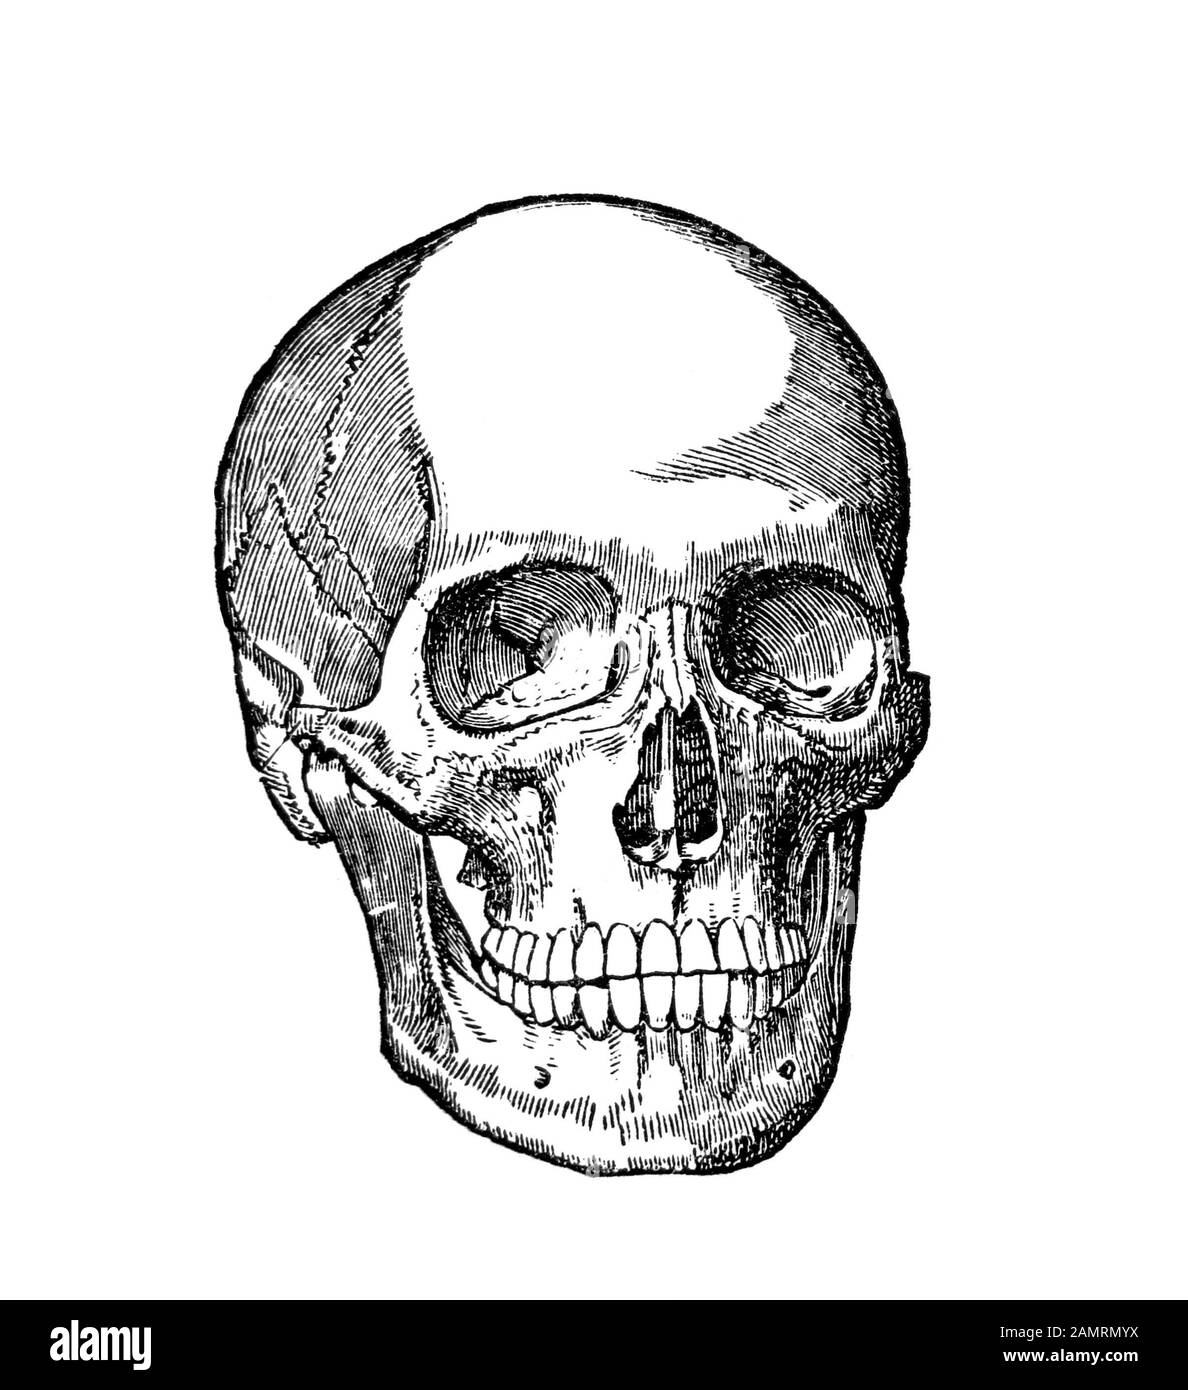 Illustrazione circa la fine di 1800s di un cranio umano. Disegno in bianco e nero diagramma scientifico medico. Foto Stock